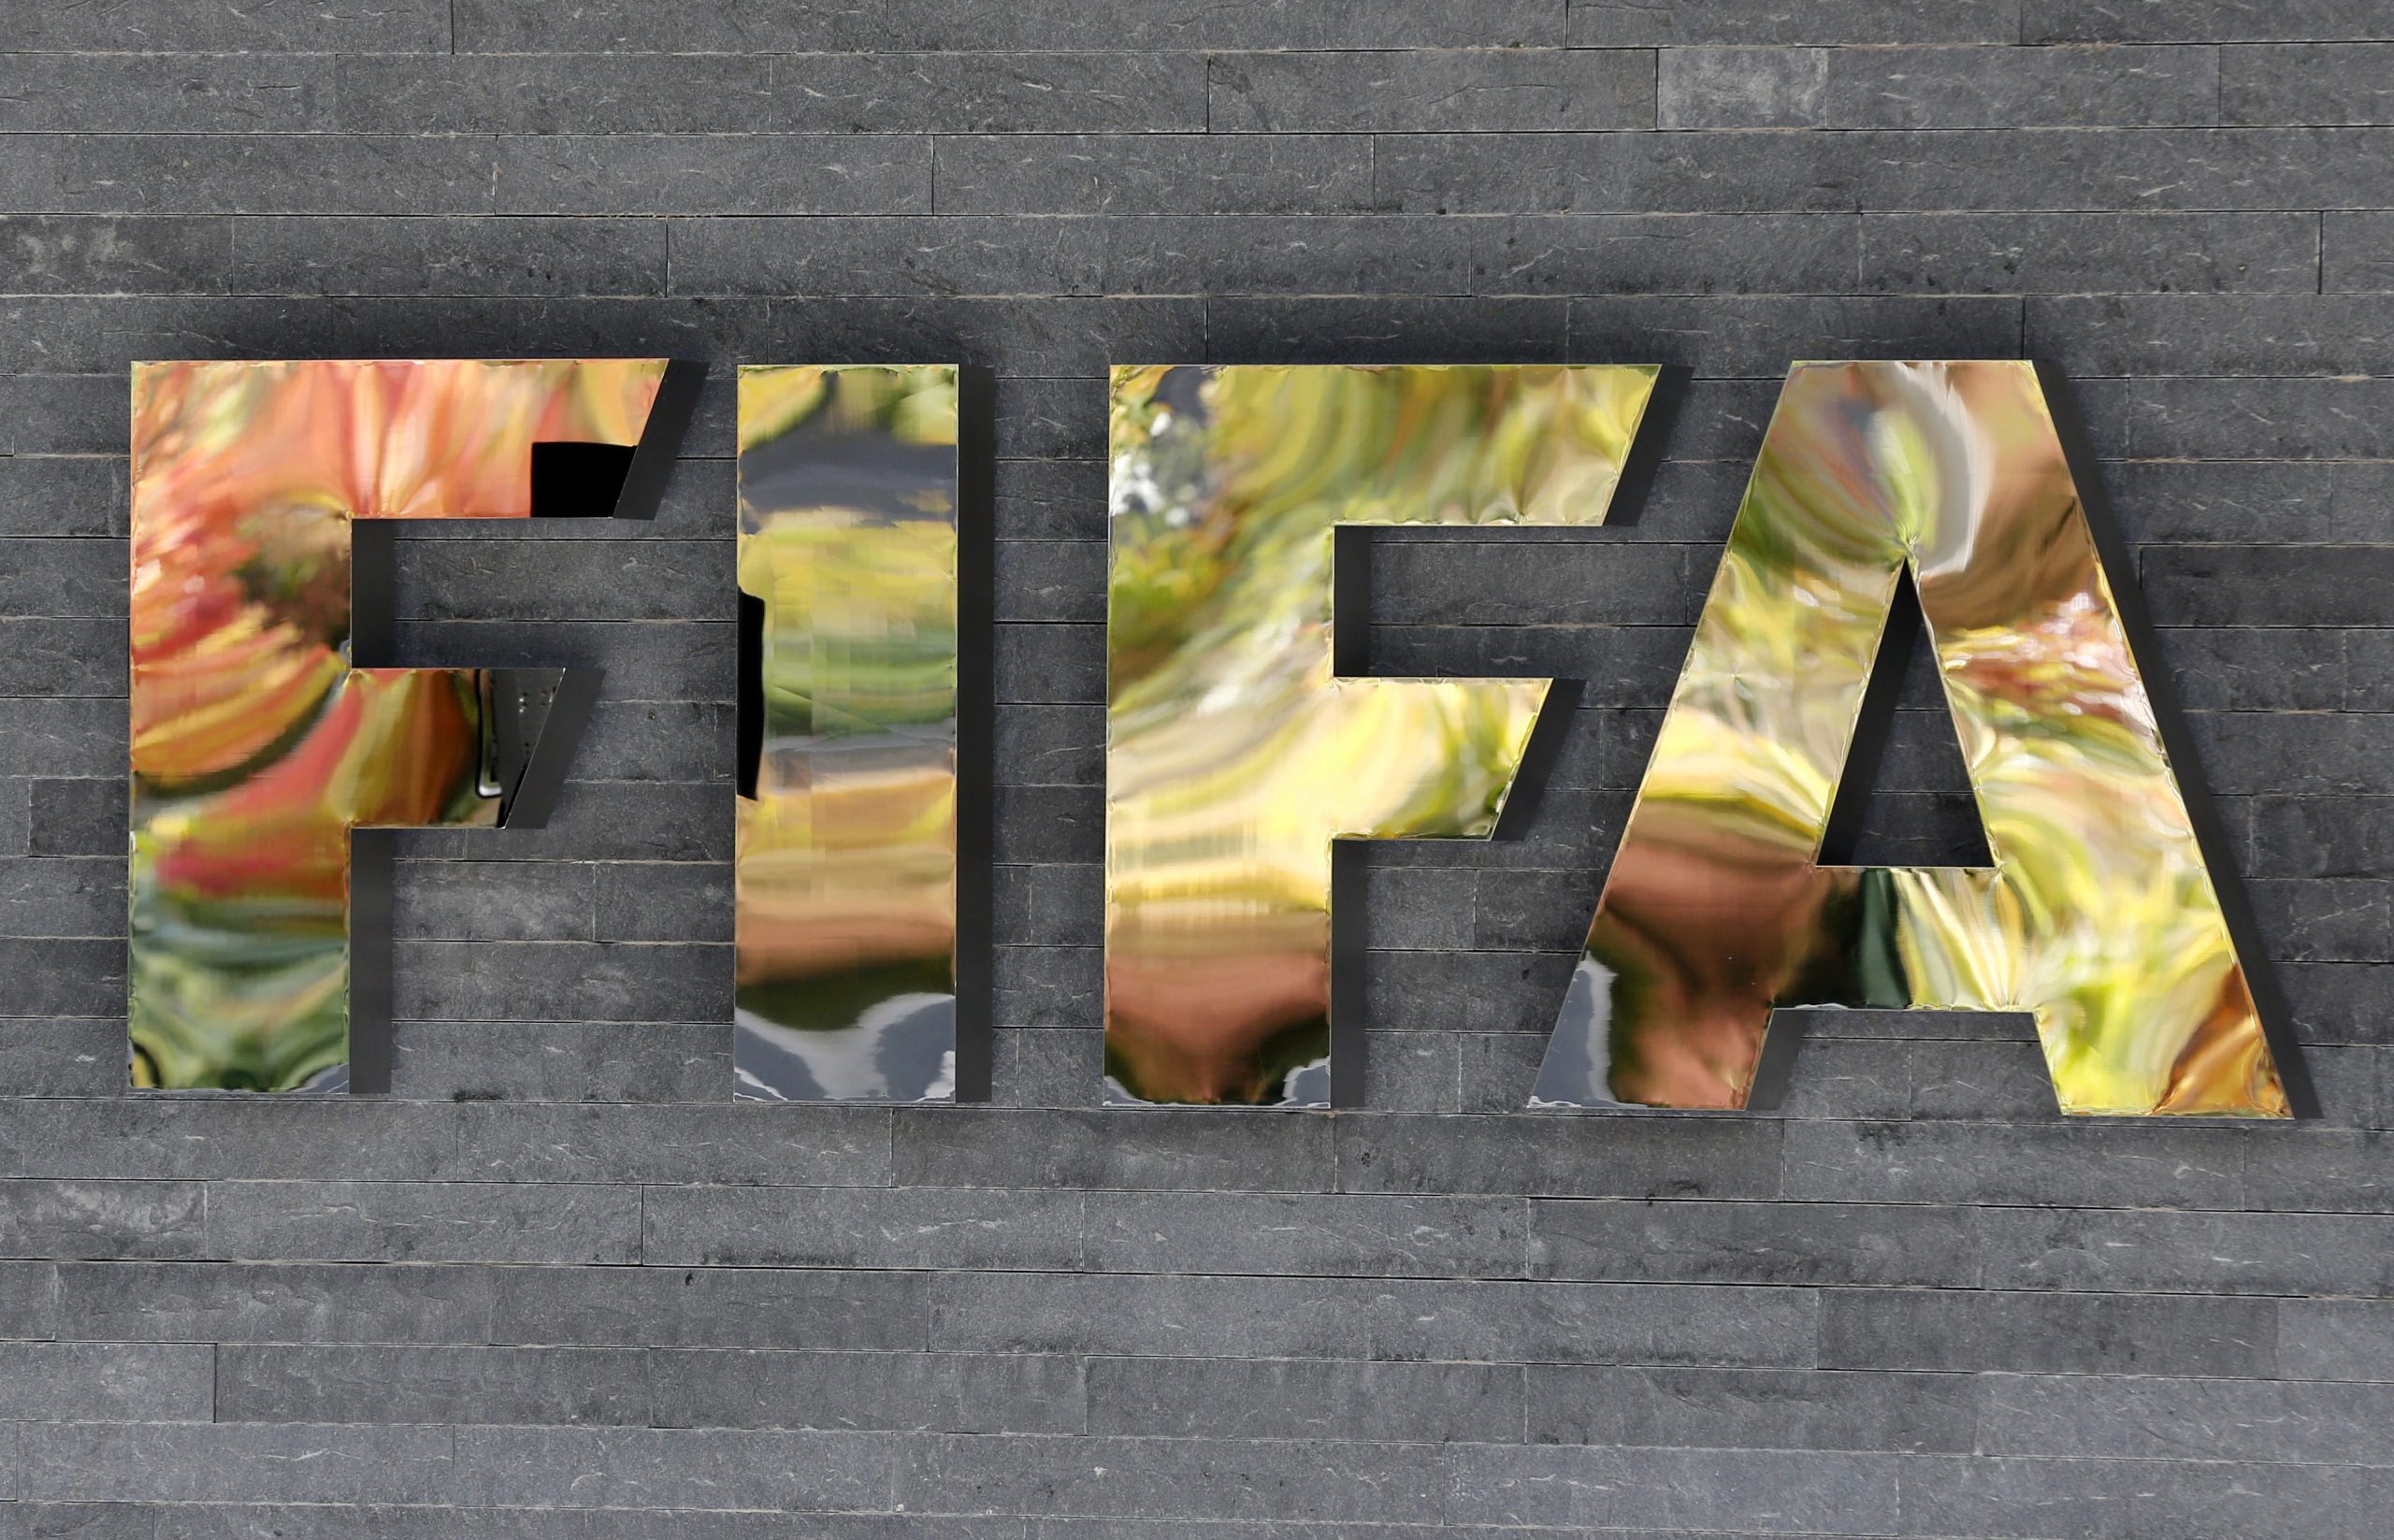  FIFA anunciará en junio sedes para el Mundial de 2026